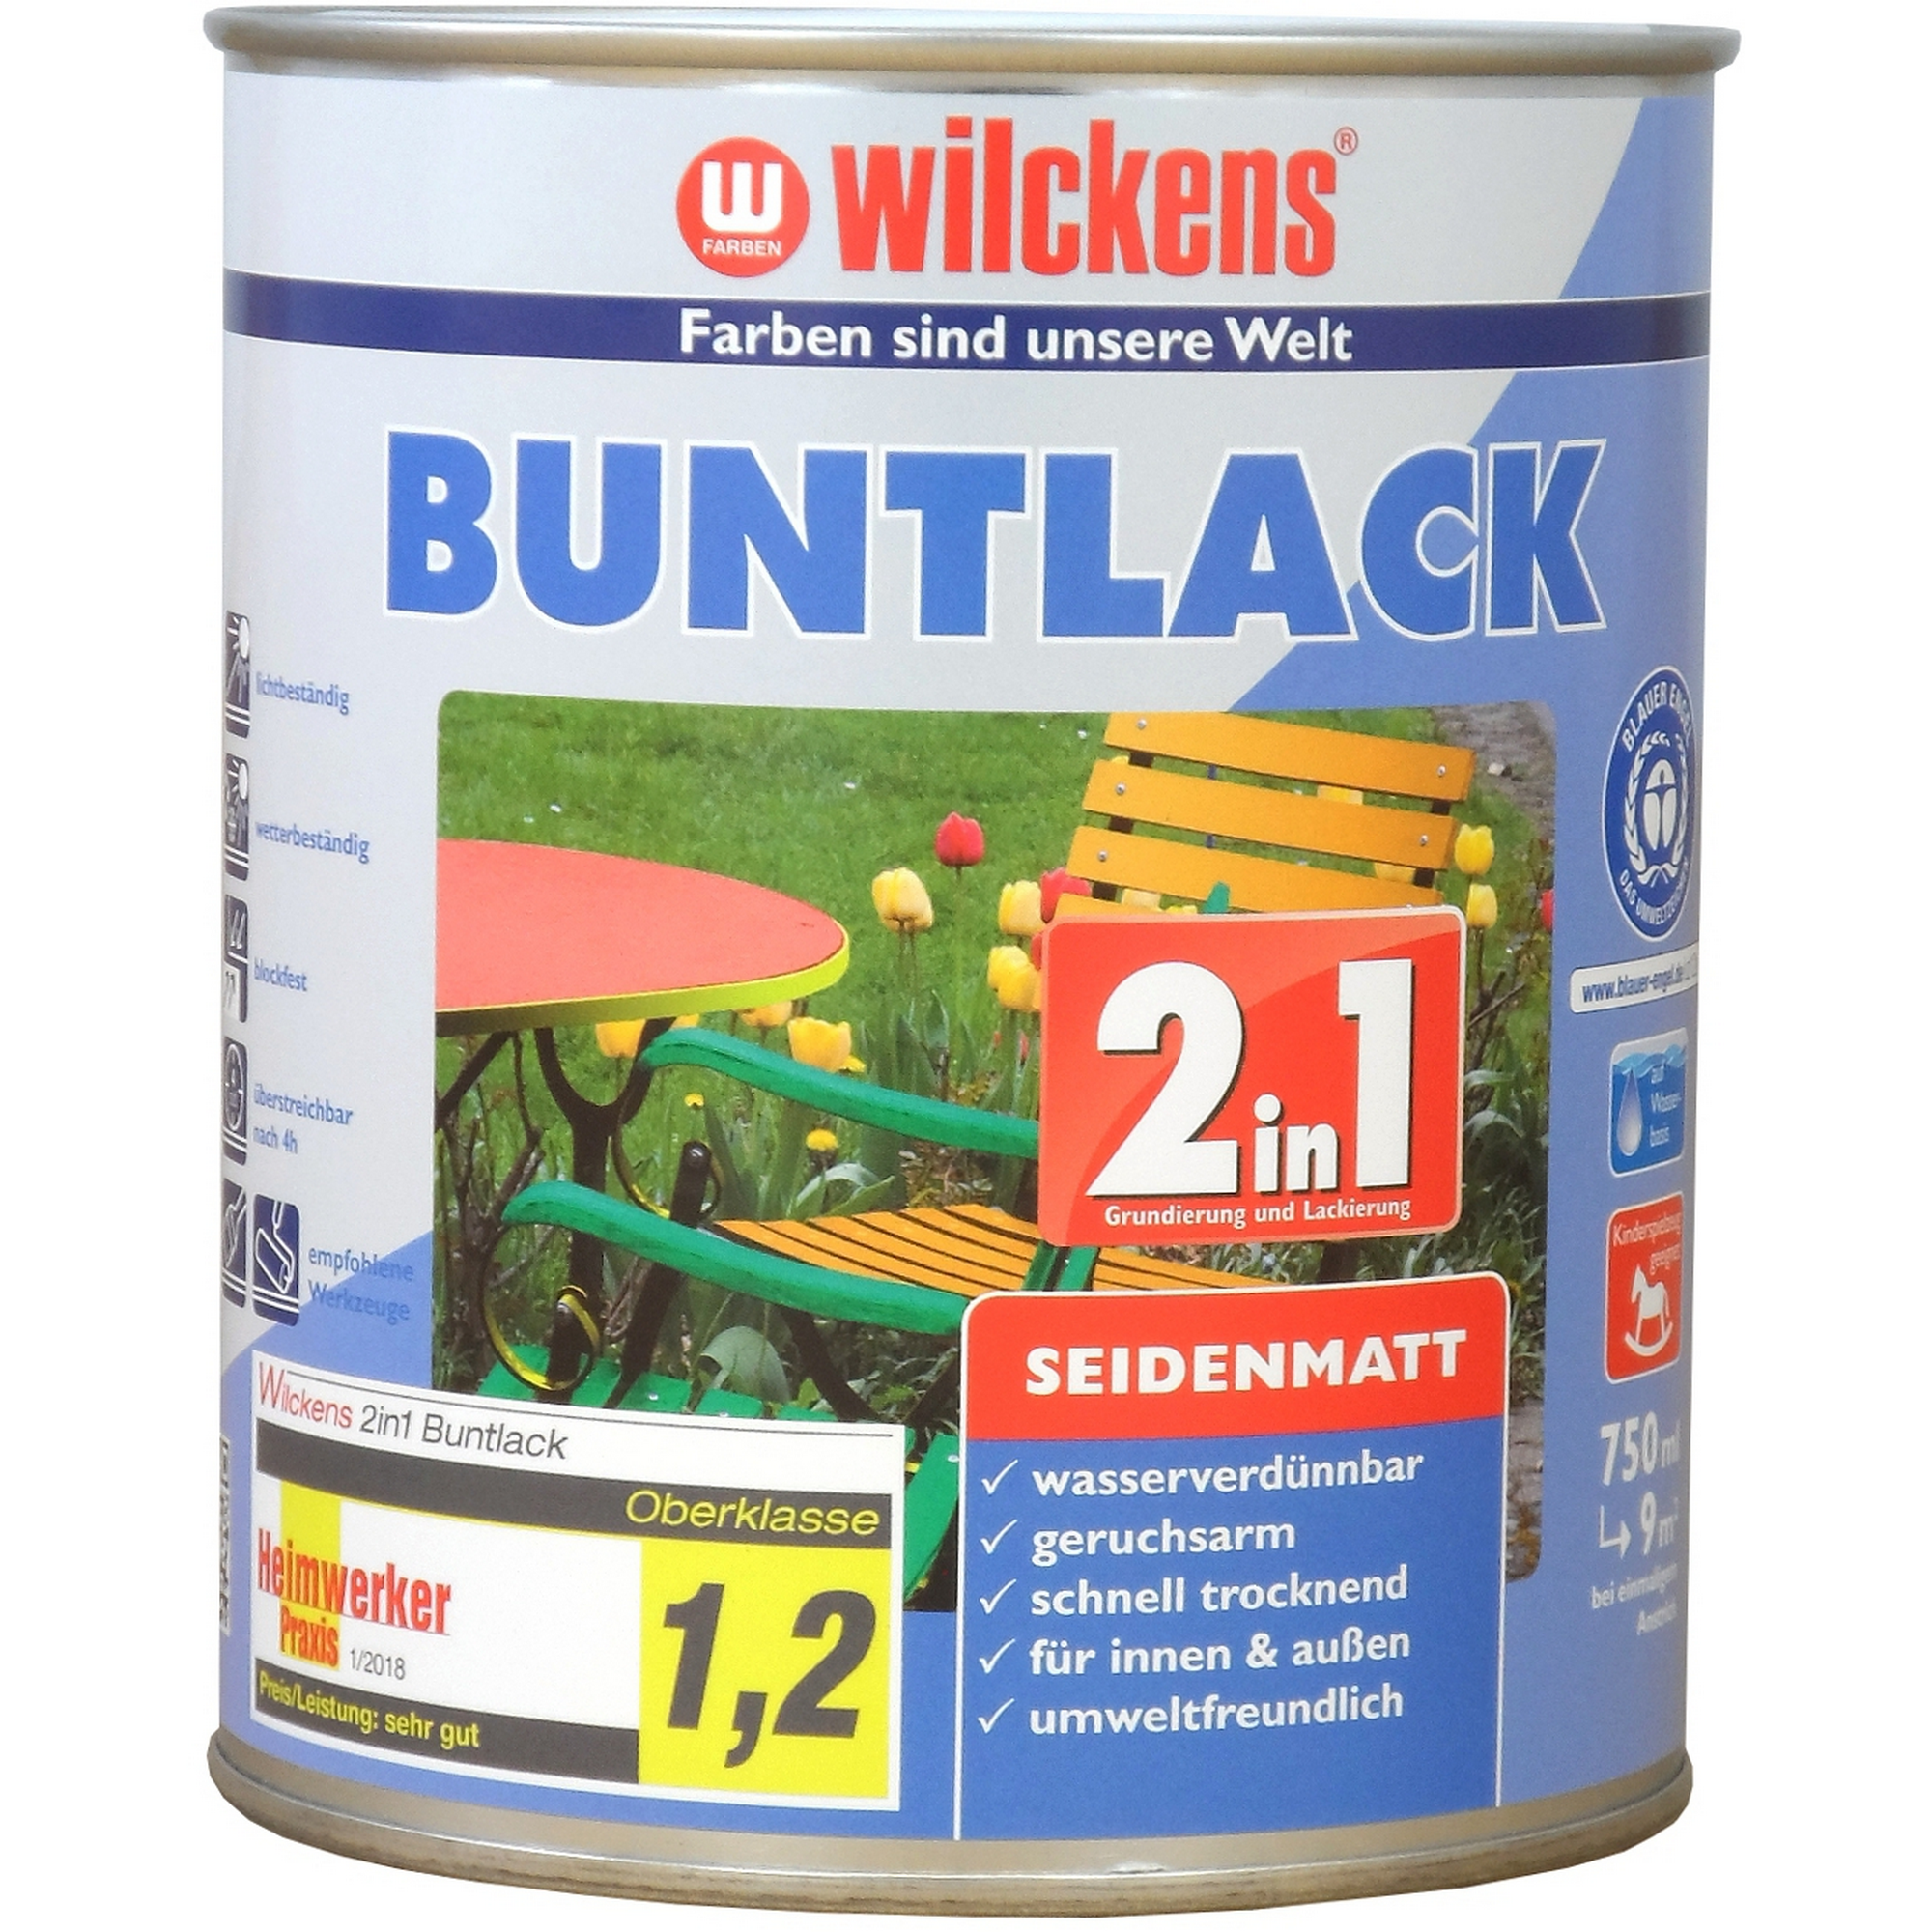 2in1 Buntlack lichtgrau seidenmatt 750 ml + product picture